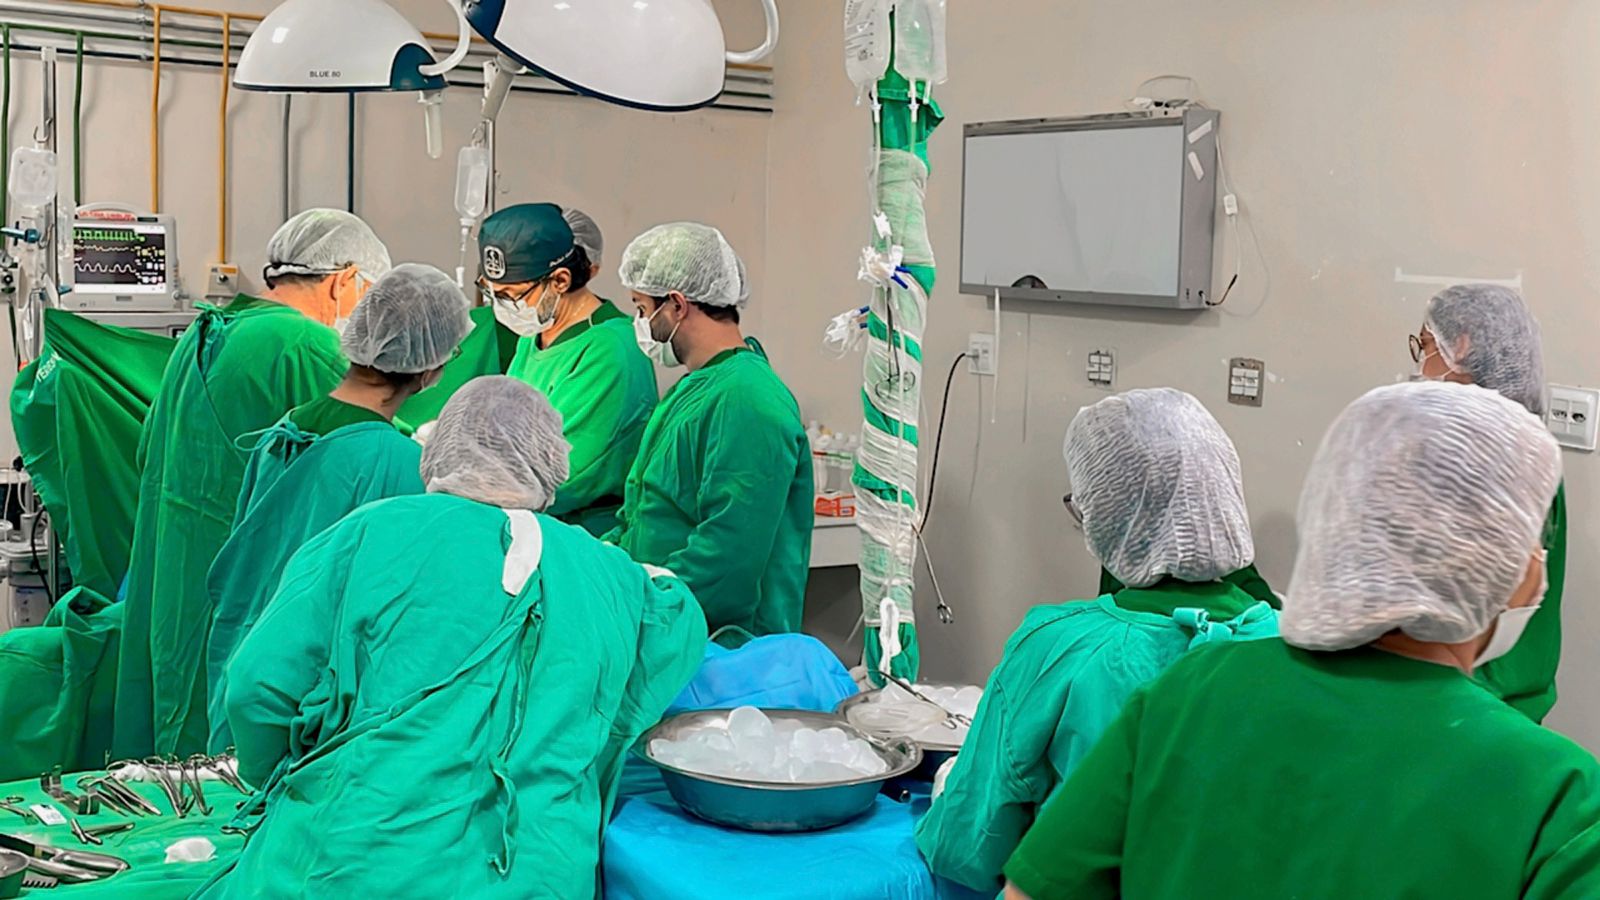 Hospital Urgência de Teresina lidera captação de órgãos no Piauí